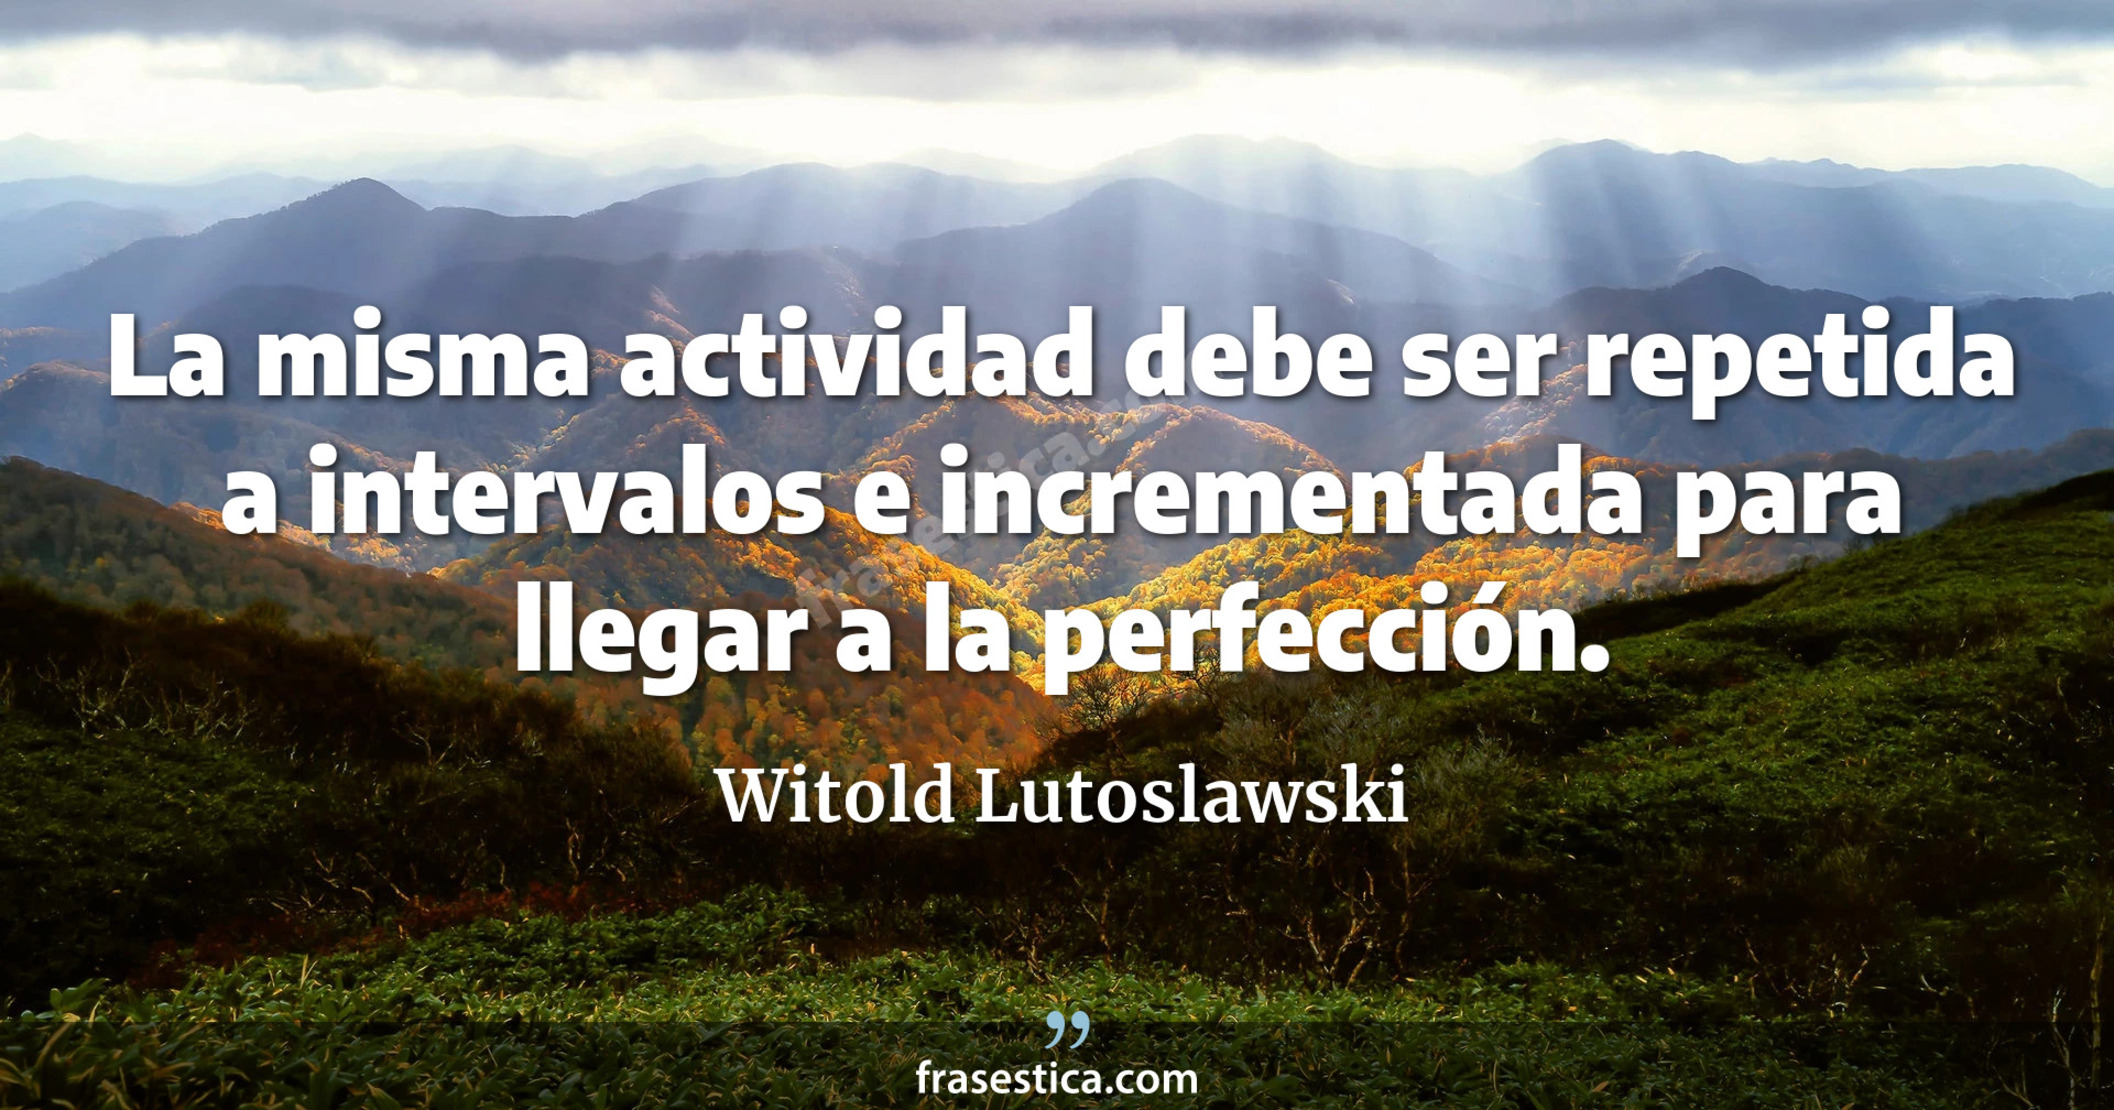 La misma actividad debe ser repetida a intervalos e incrementada para llegar a la perfección. - Witold Lutoslawski